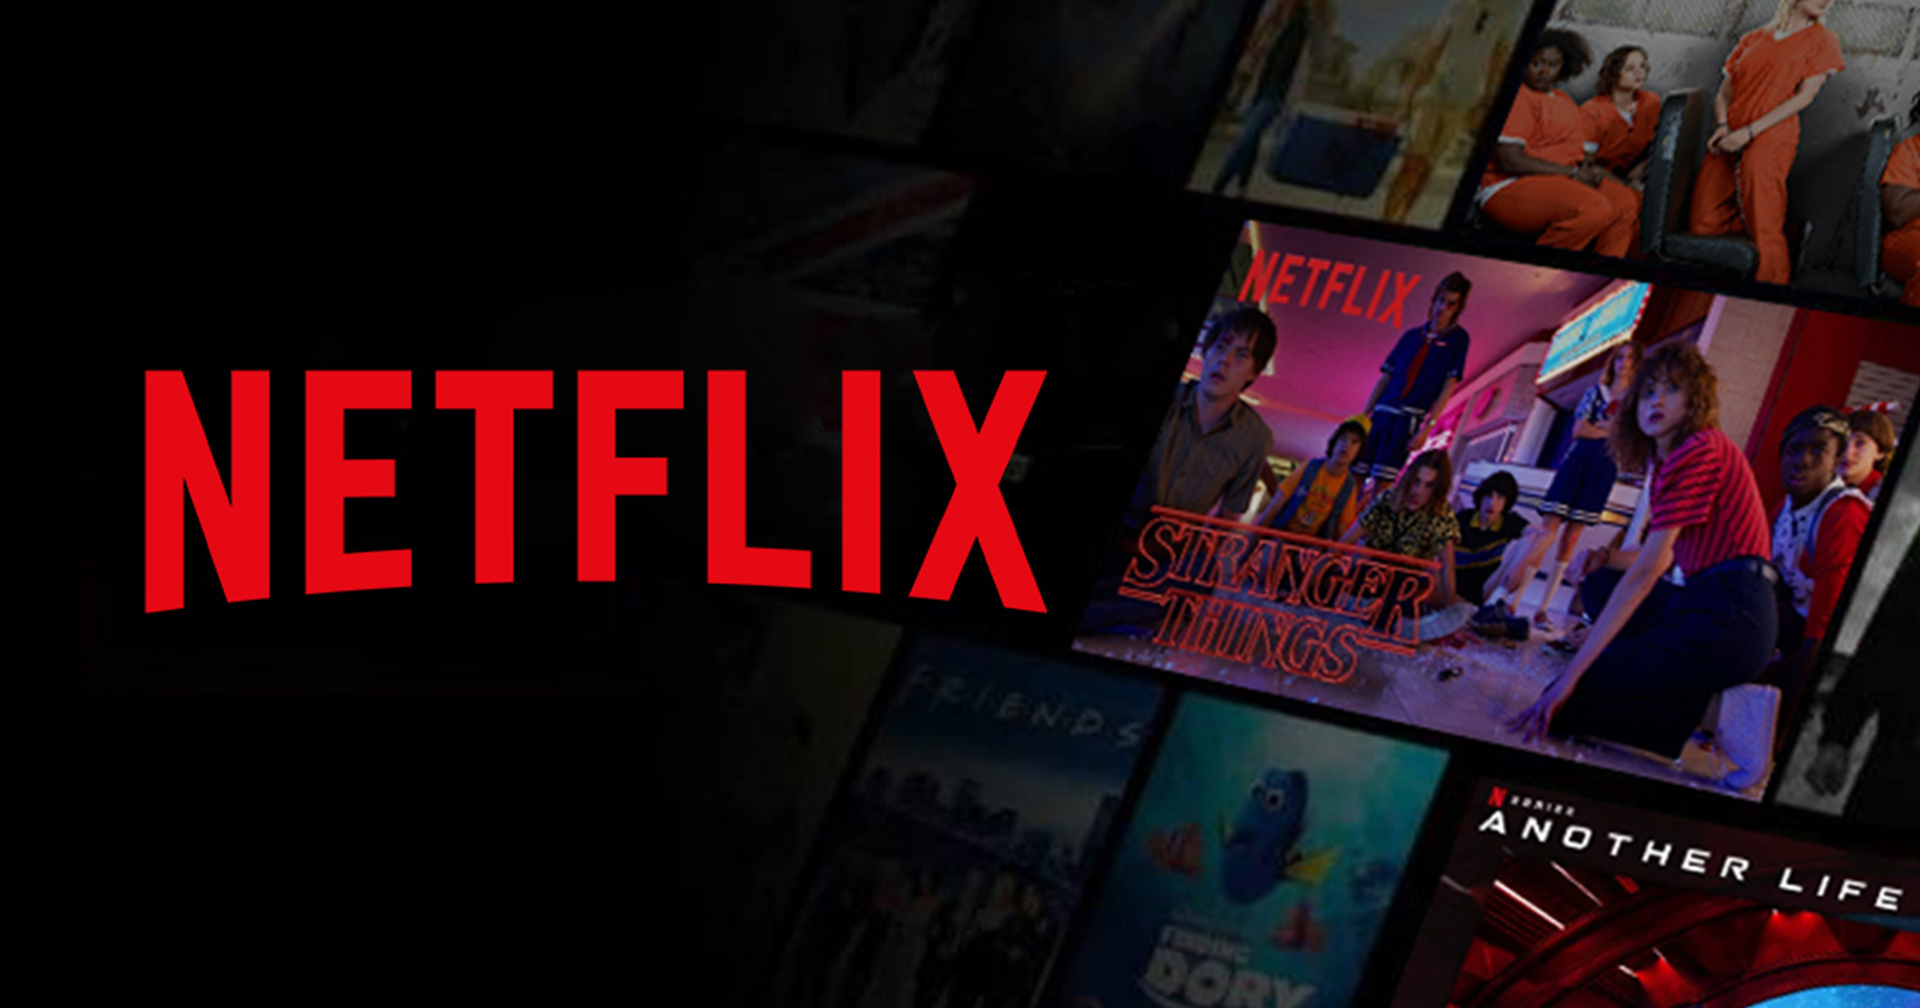 Netflix เผย ชื่อหนังเรื่องแรกที่ให้บริการ รวมถึงไอคอนโปรไฟล์ ที่คนใช้มากสุดในโลก